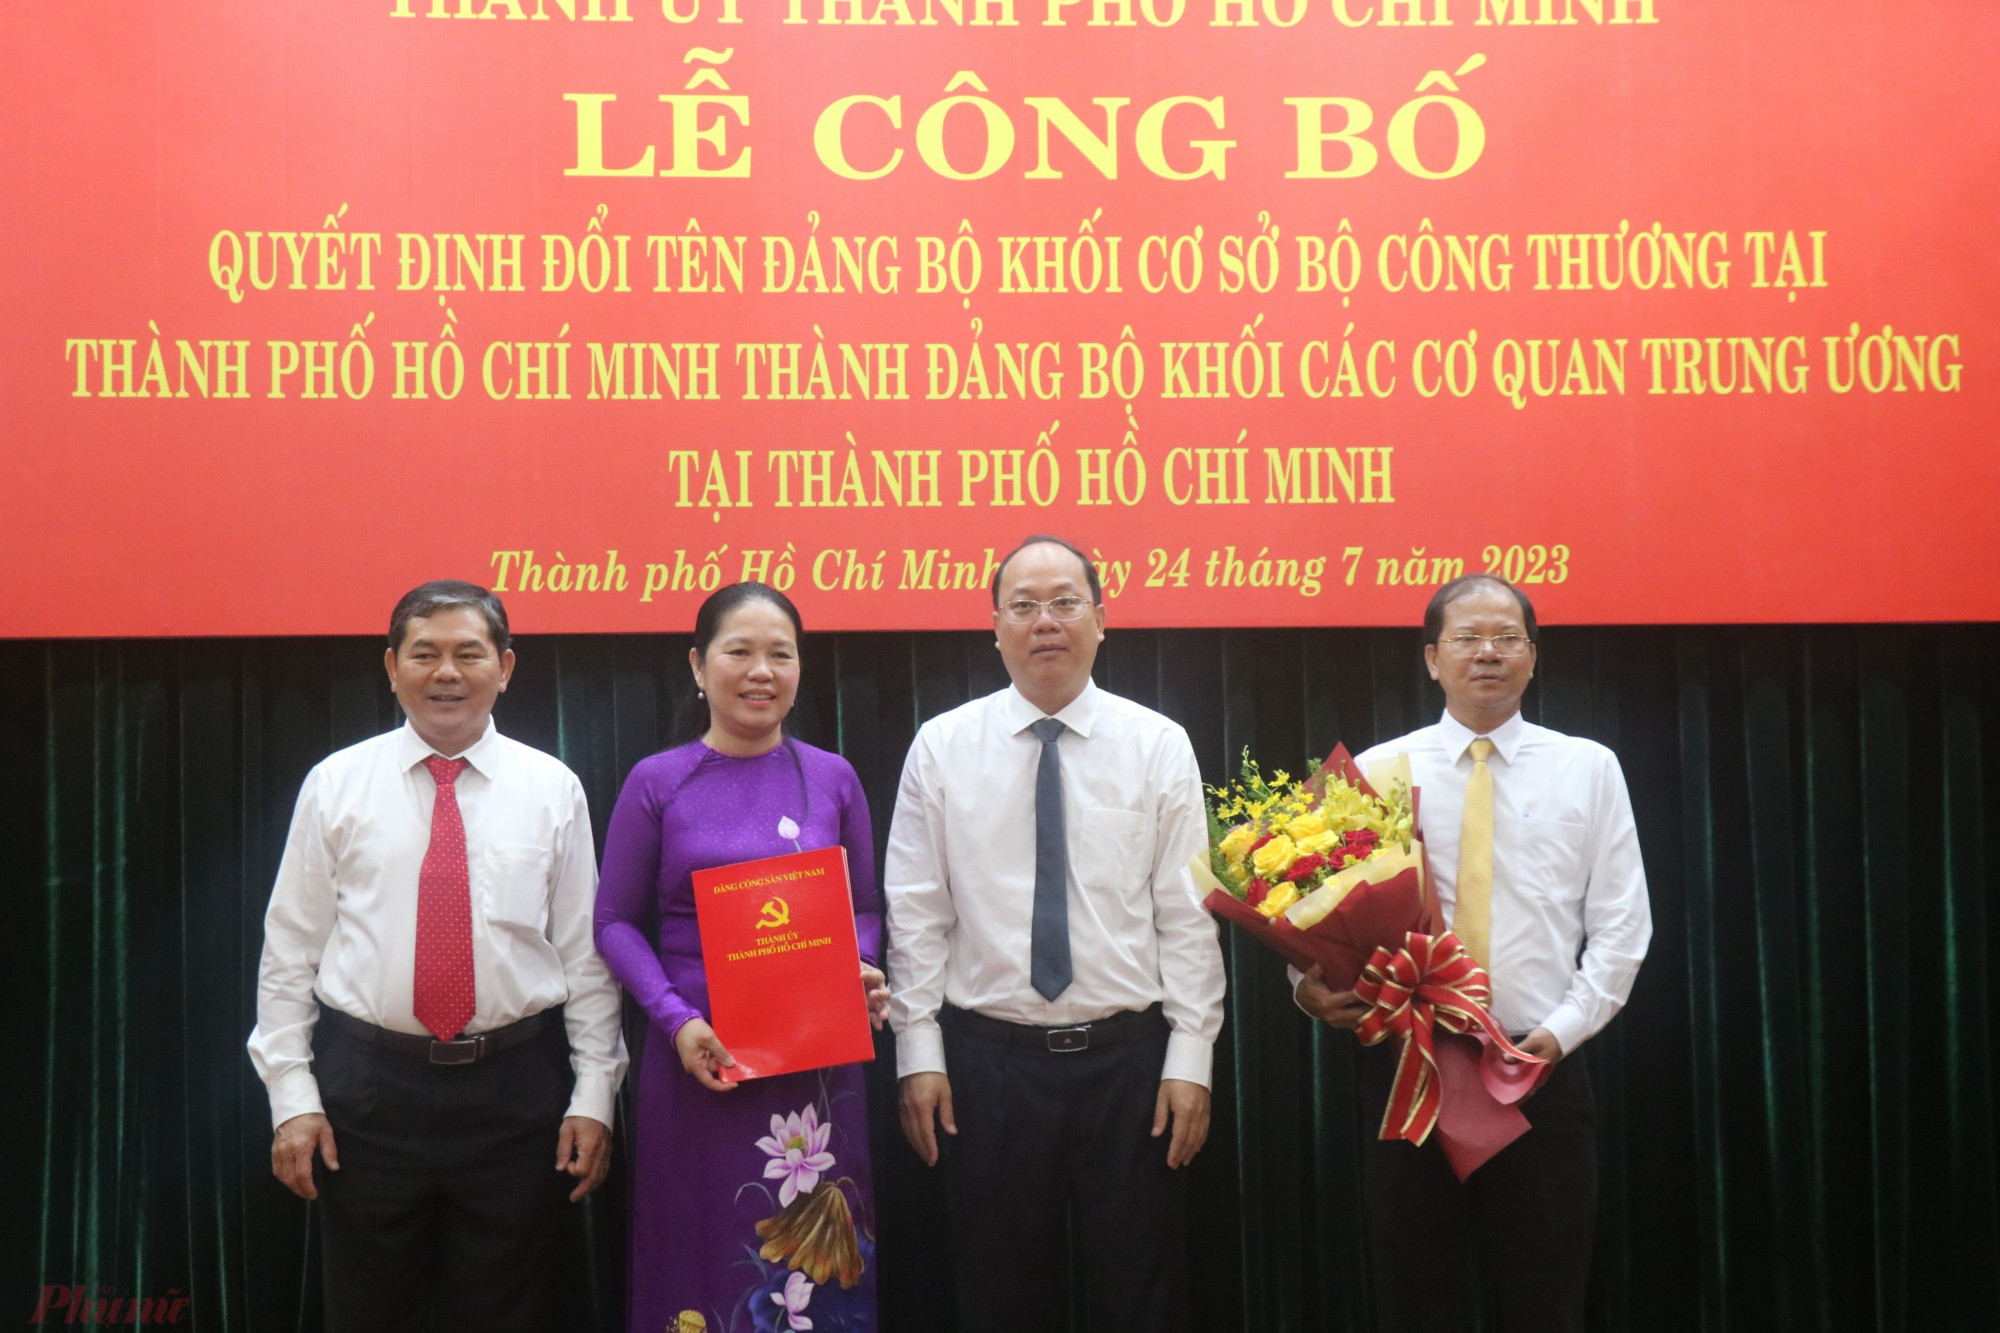 Phó Bí thư Thành ủy TPHCM Nguyễn Hồ Hải (thứ 2 từ phải sang) trao quyết định cho các cá nhân